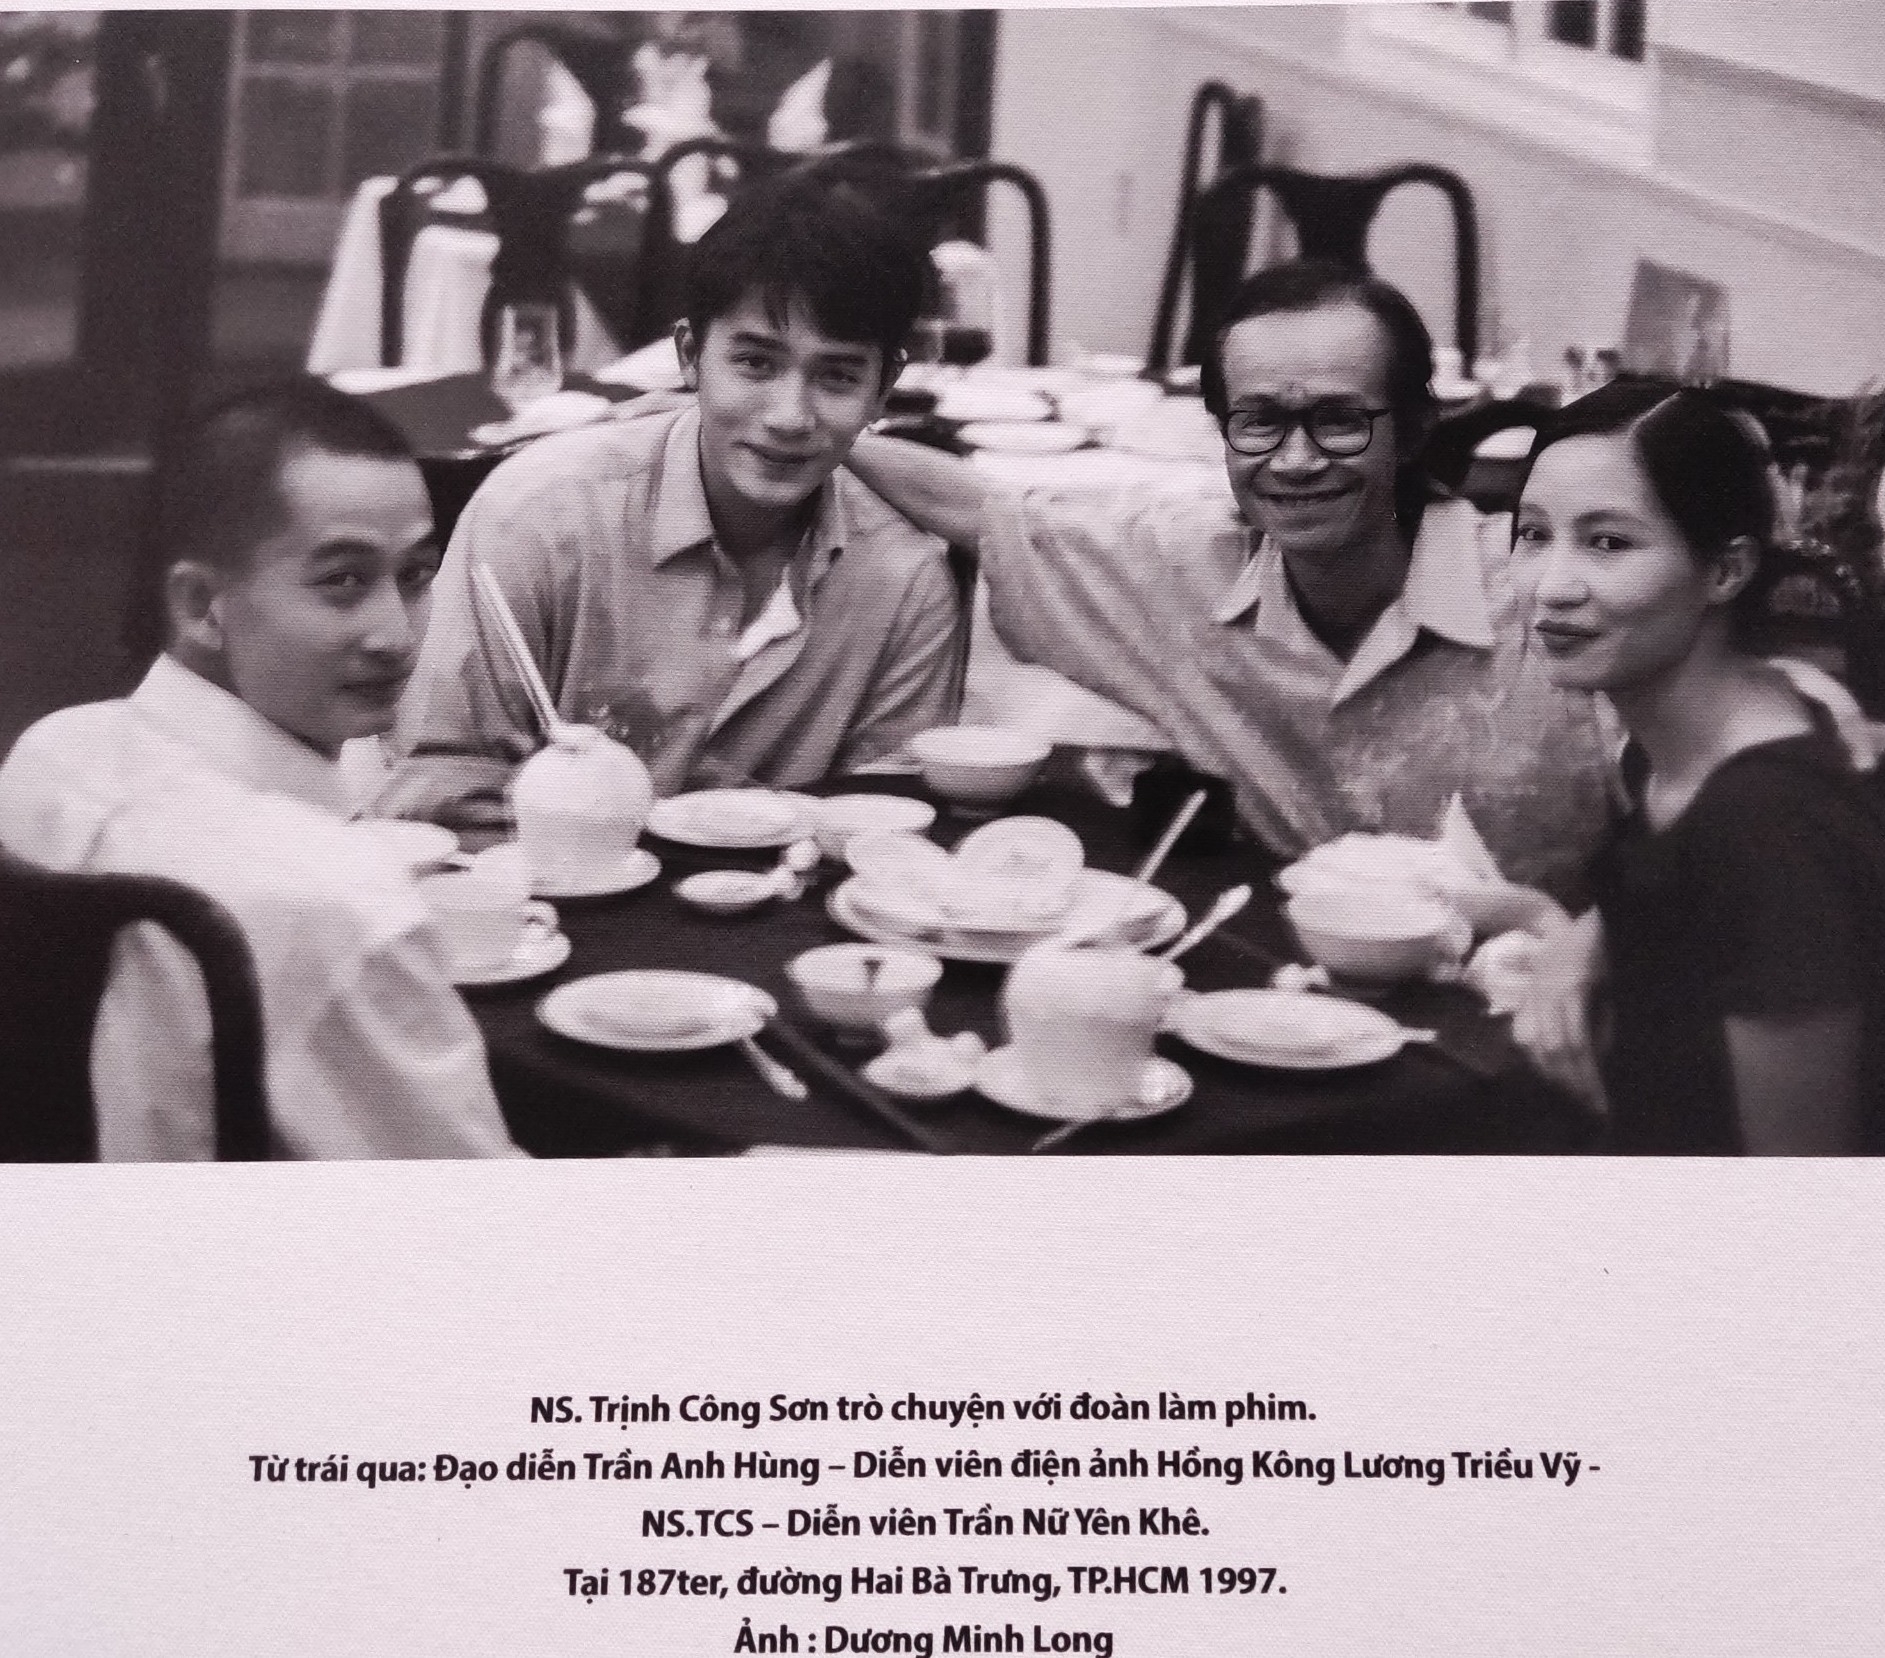 Bức ảnh chụp lại cảnh đạo diễn Trần Anh Hùng, tài tử Lương Triều Vỹ, nhạc sĩ Trịnh Công Sơn và diễn viên Trần Nữ Yên Khê (vợ Trần Anh Hùng) hội ngộ năm 1997 tại TP HCM được trưng bày tại triển lãm. Ảnh: Dương Minh Long